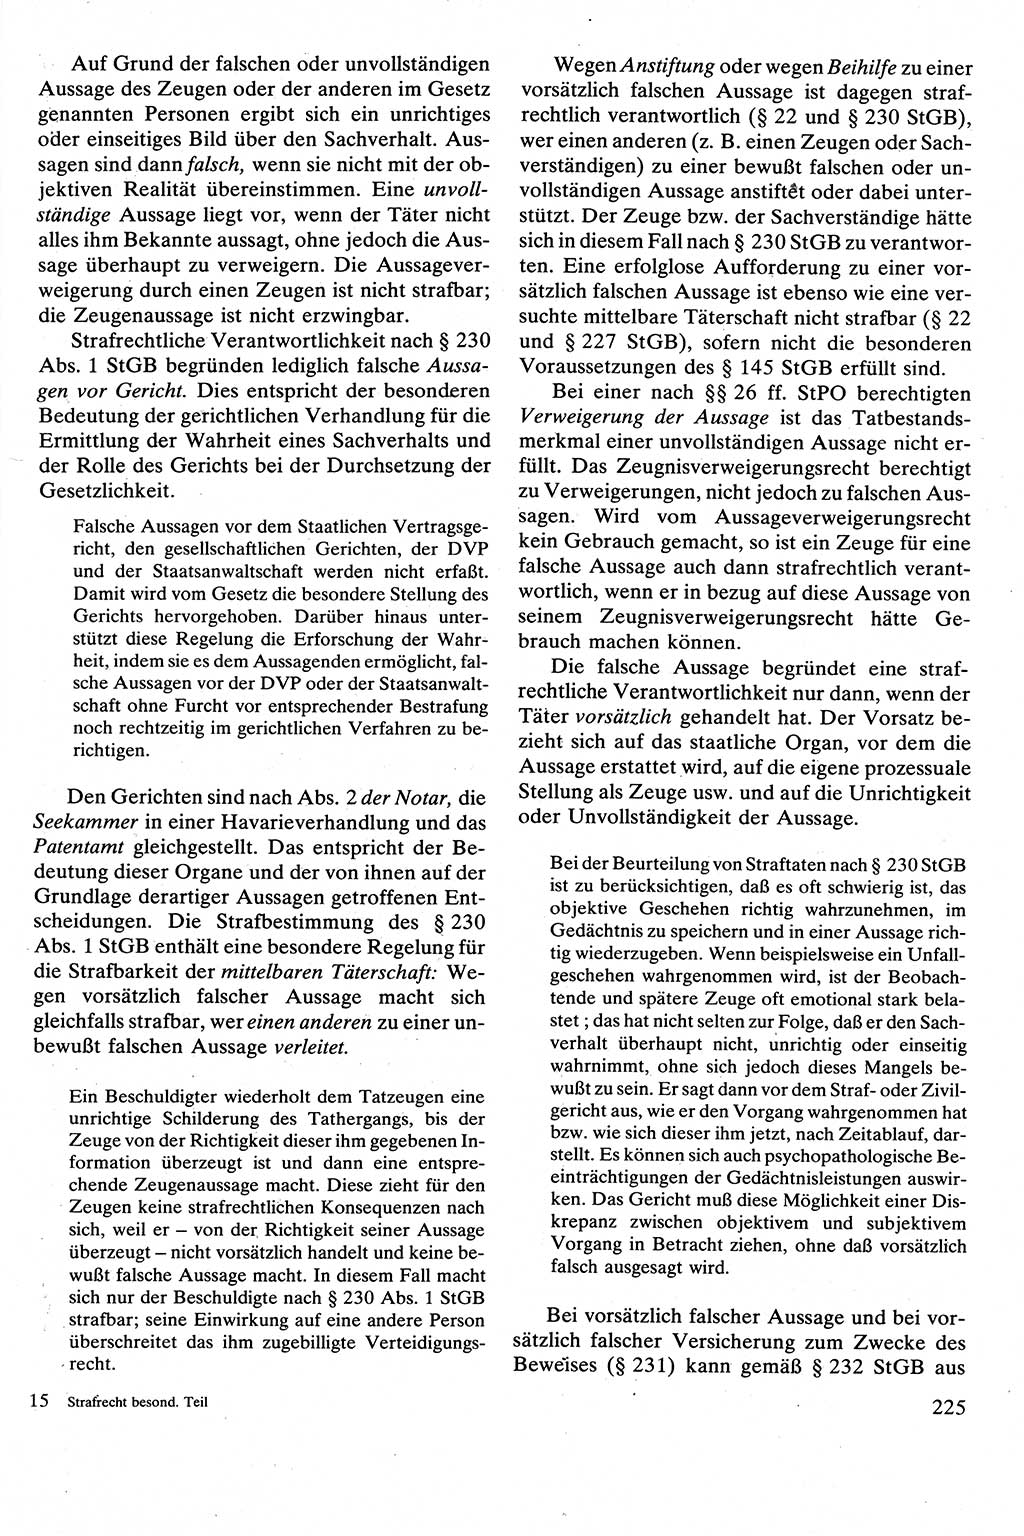 Strafrecht [Deutsche Demokratische Republik (DDR)], Besonderer Teil, Lehrbuch 1981, Seite 225 (Strafr. DDR BT Lb. 1981, S. 225)